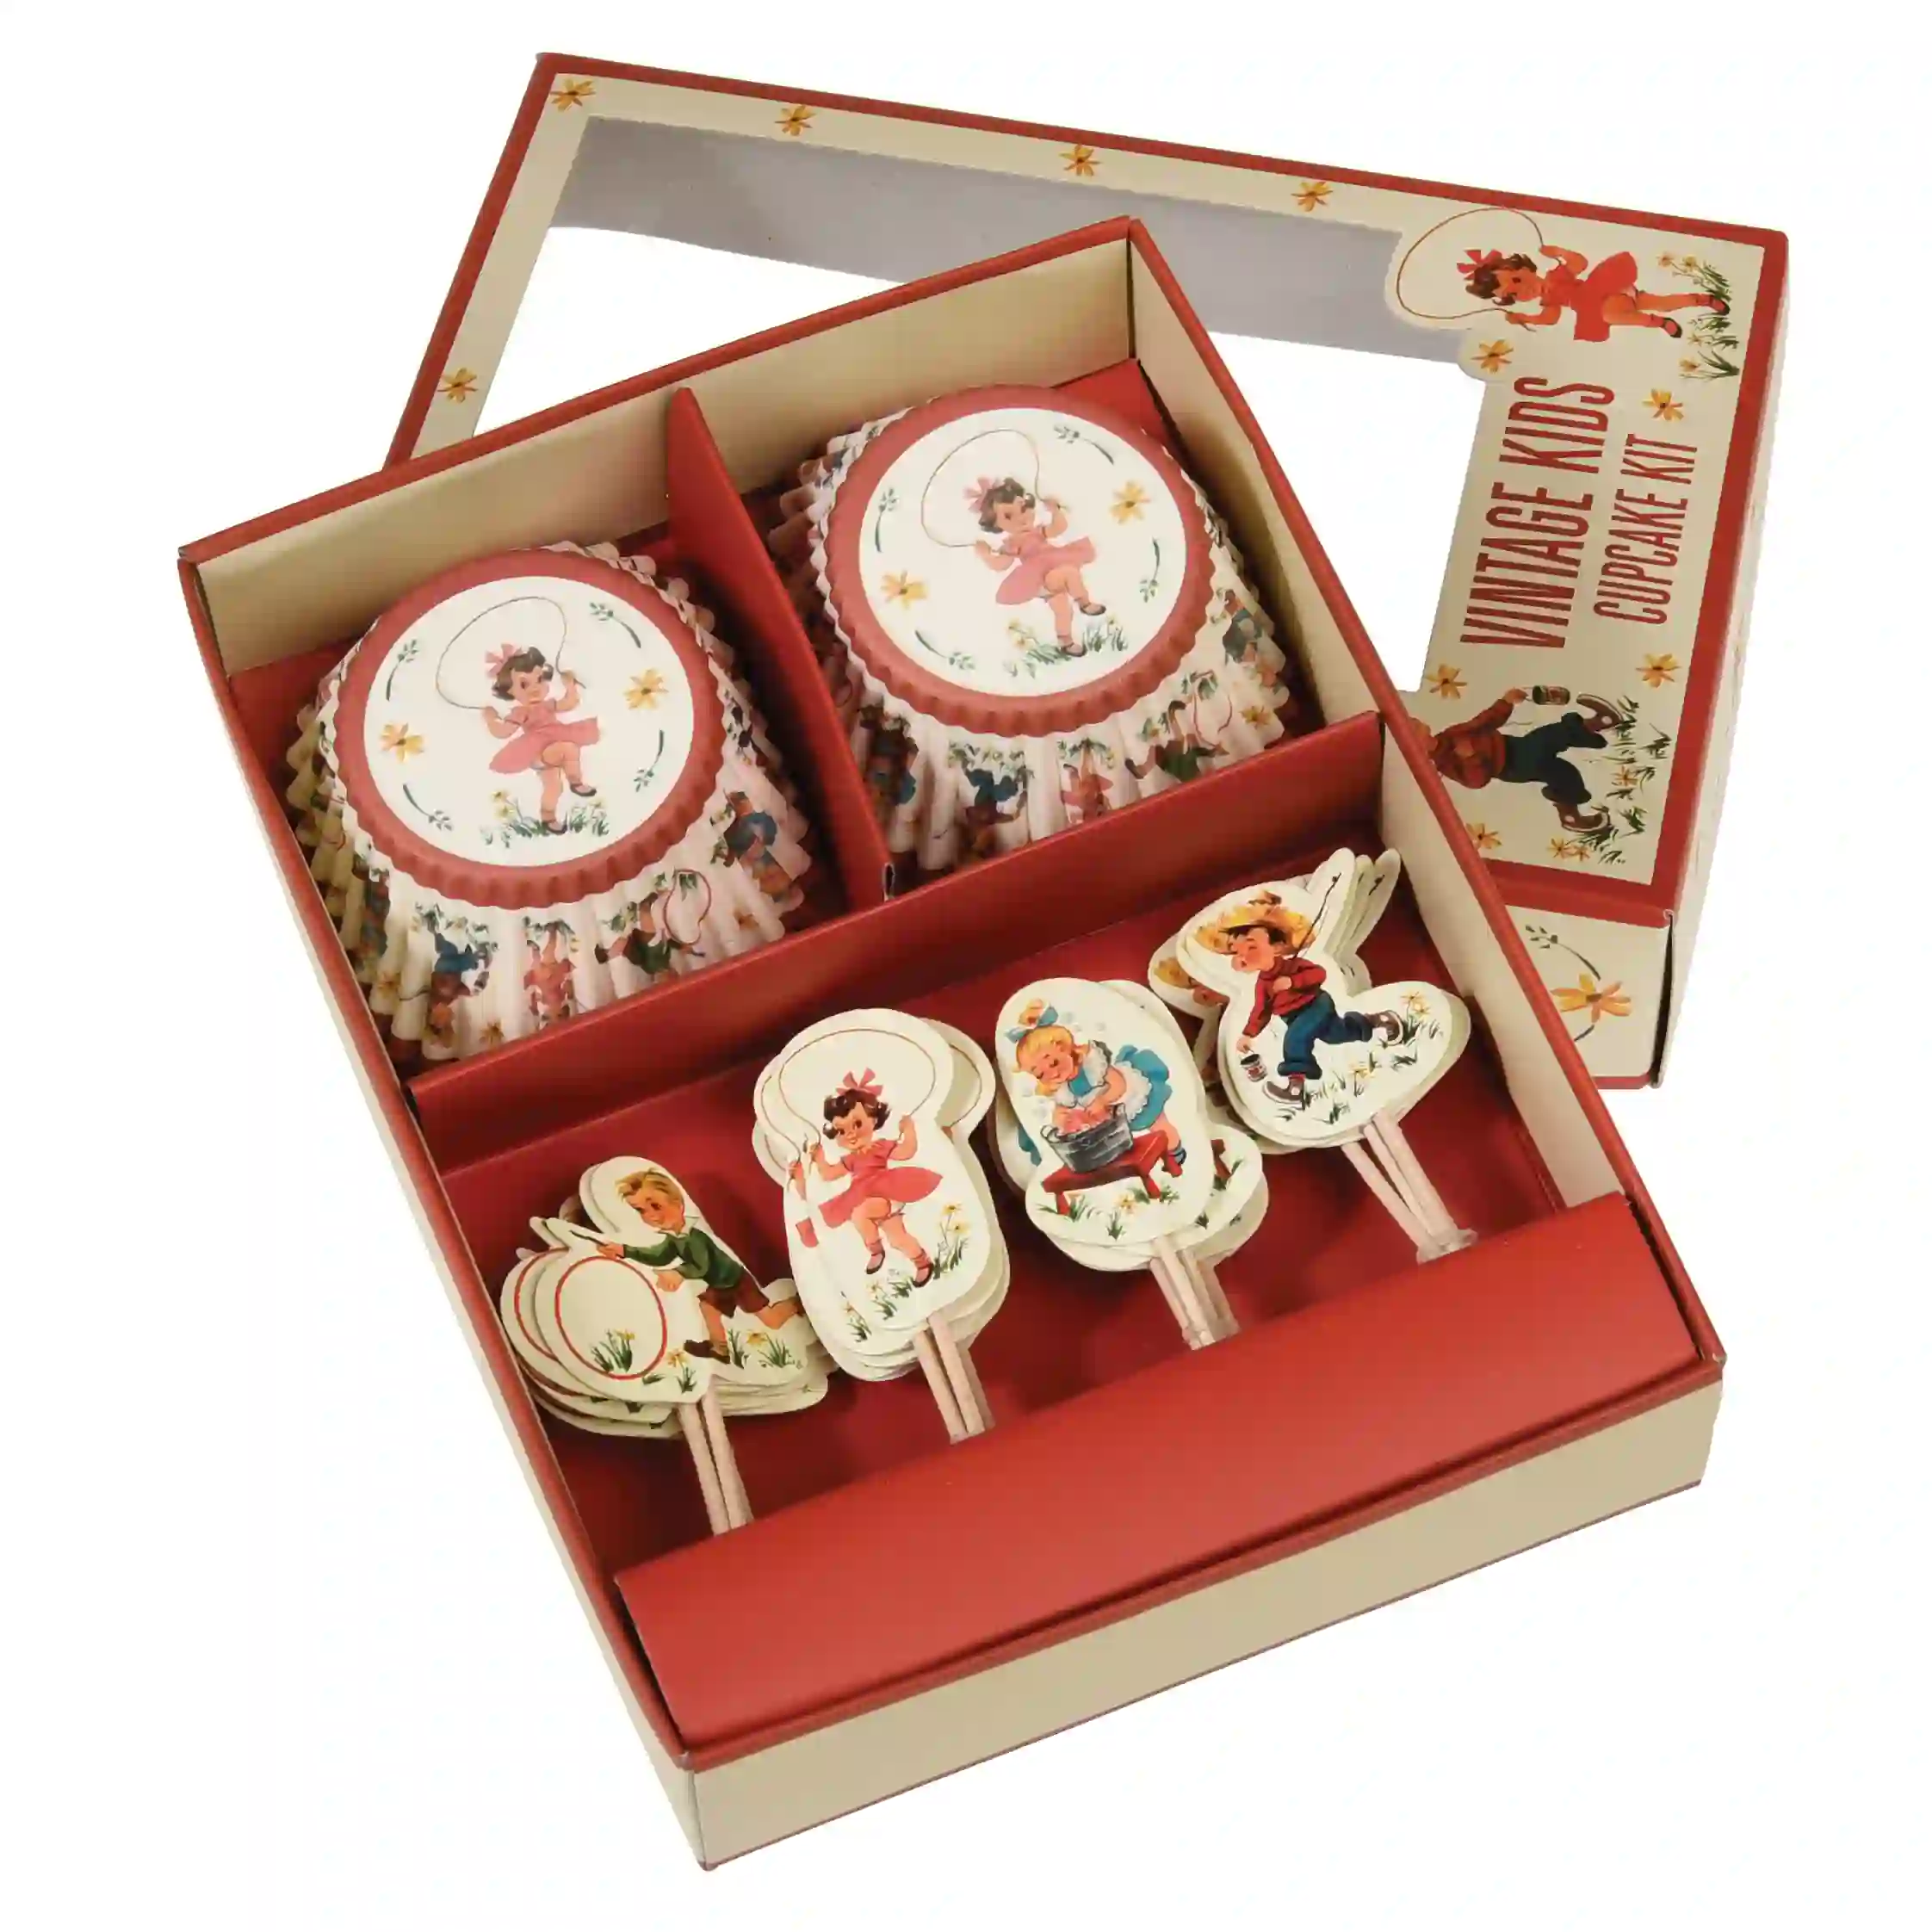 cupcake kit - vintage kids